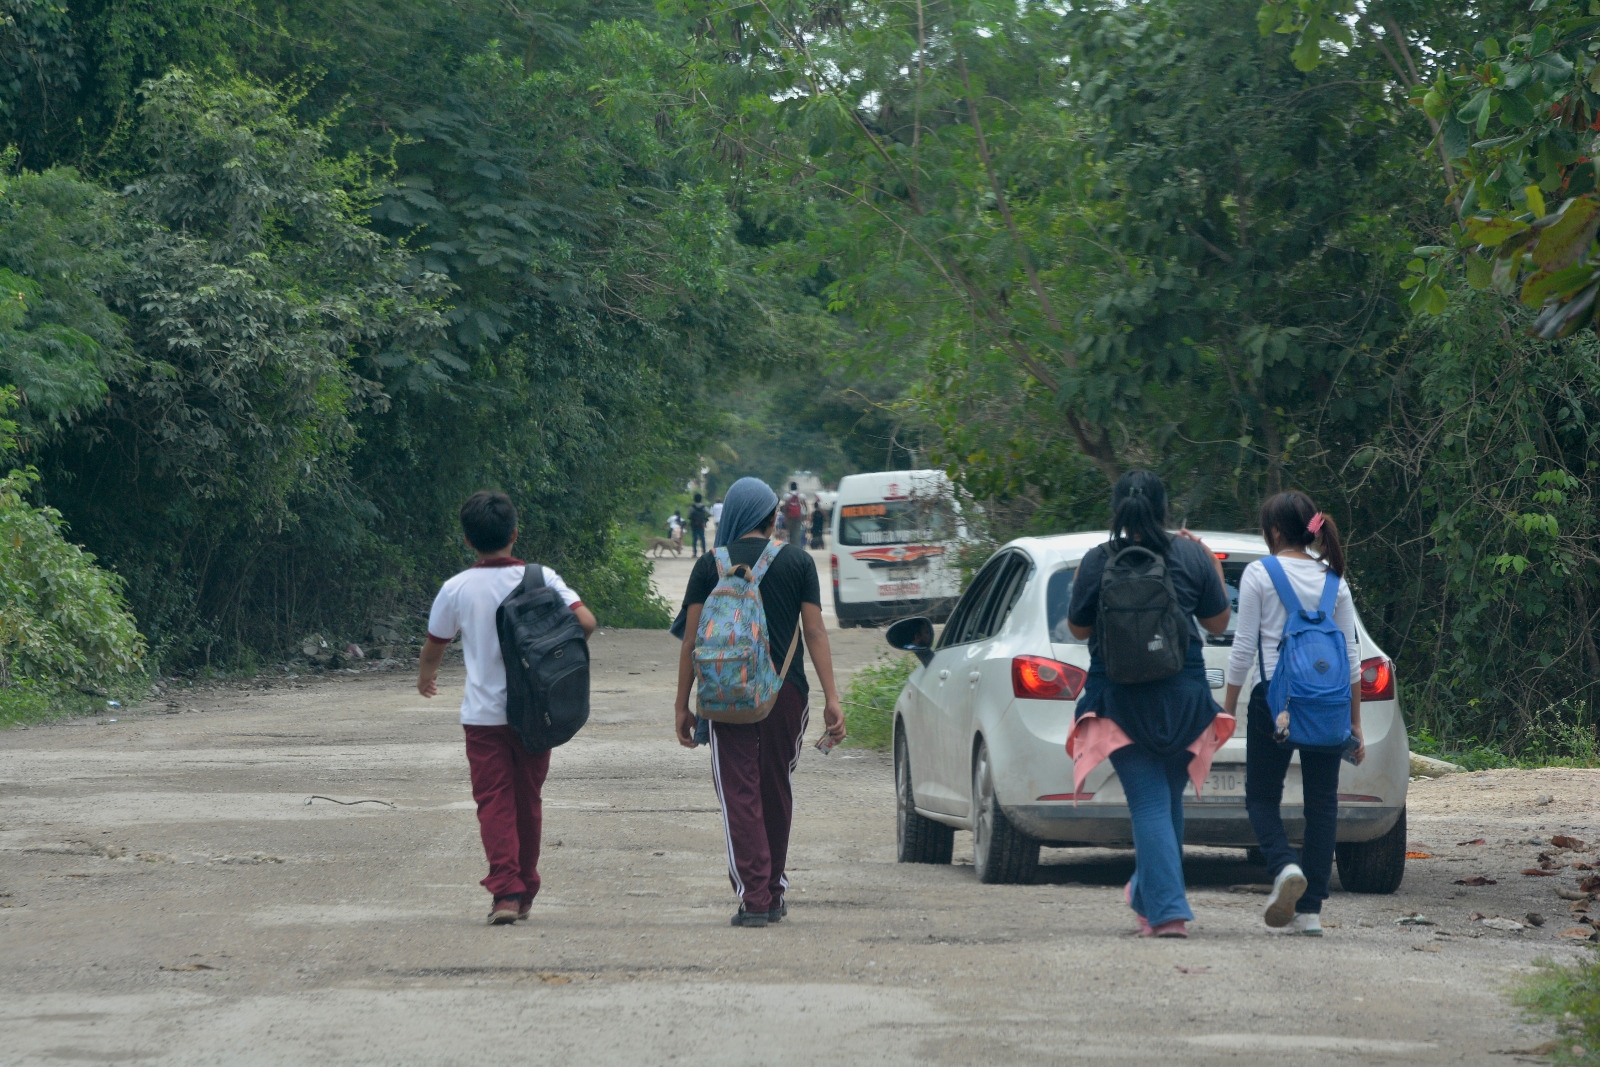 Caminos sin luz ni transporte: El desafío diario de los estudiantes de la colonia México en Cancún